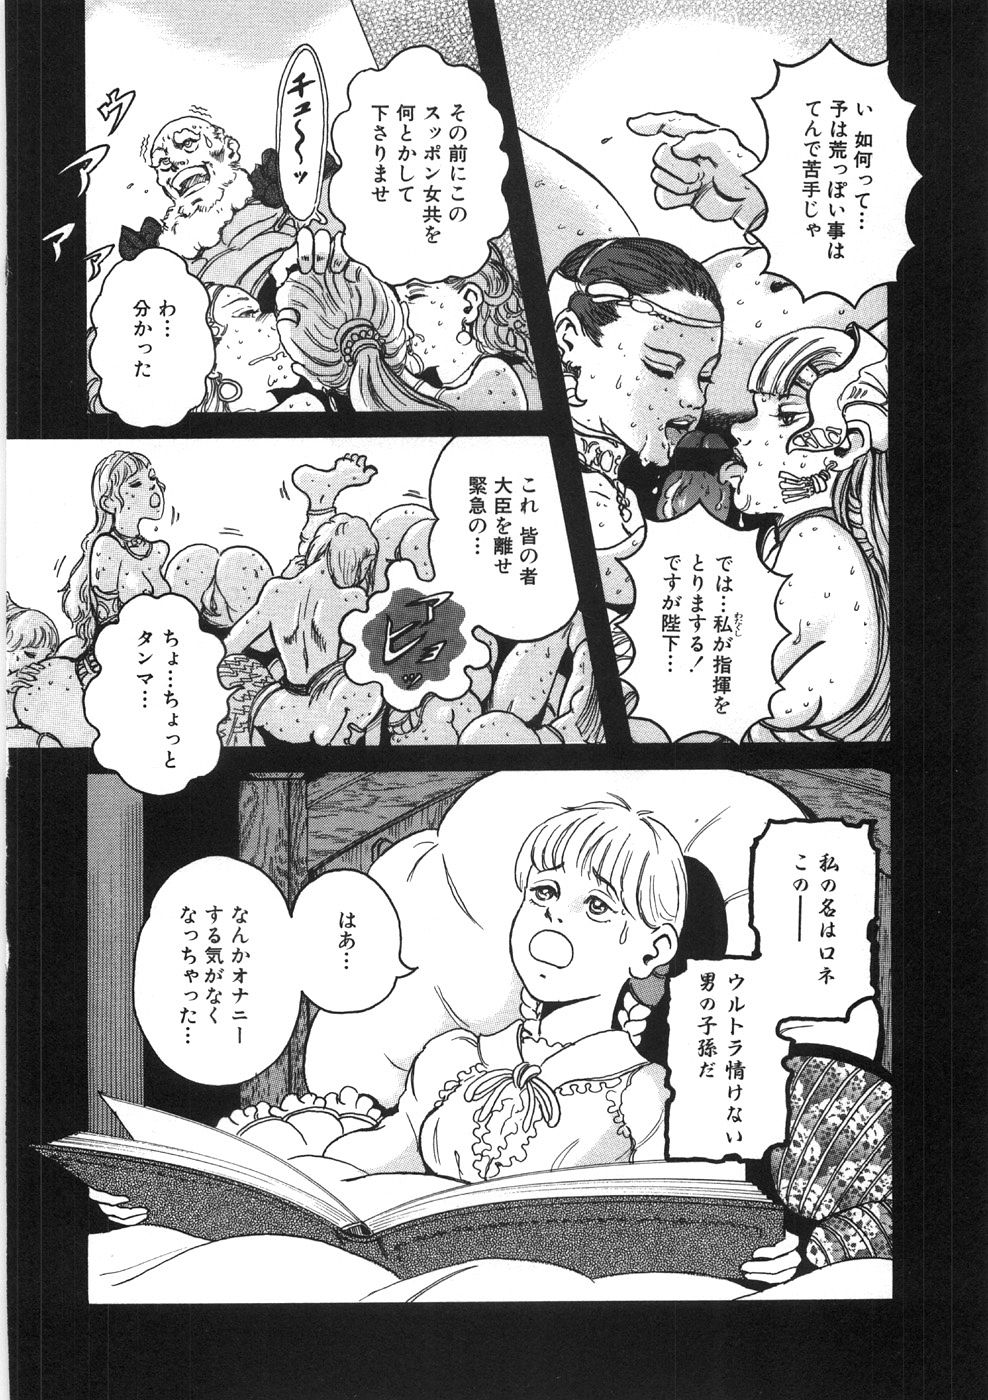 [Yasuhiko Ohtsuki] [ootsuki ho hiko] Rone no Nikki page 34 full